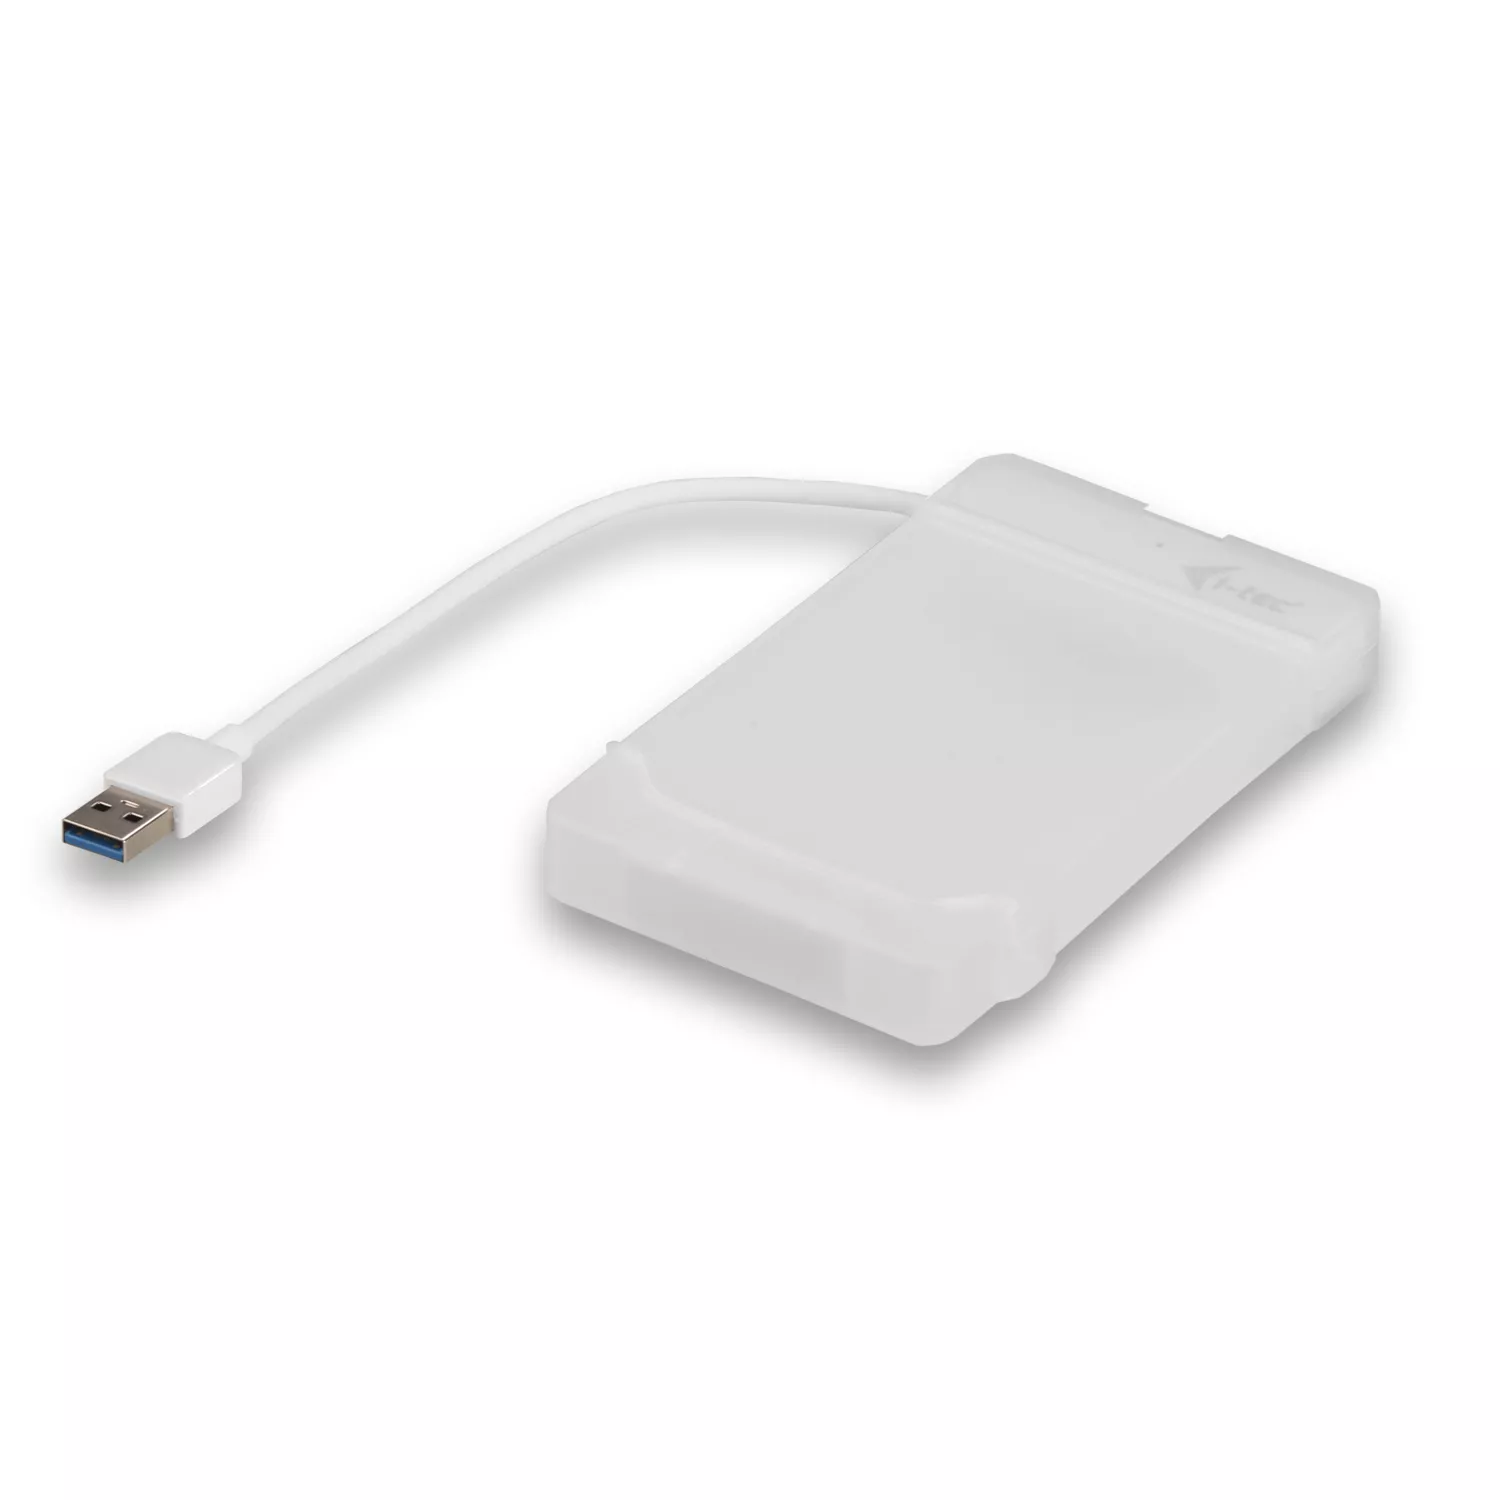 Achat I-TEC USB 3.0 Advance MySafe Easy Enclosure 6.4cm sur hello RSE - visuel 3